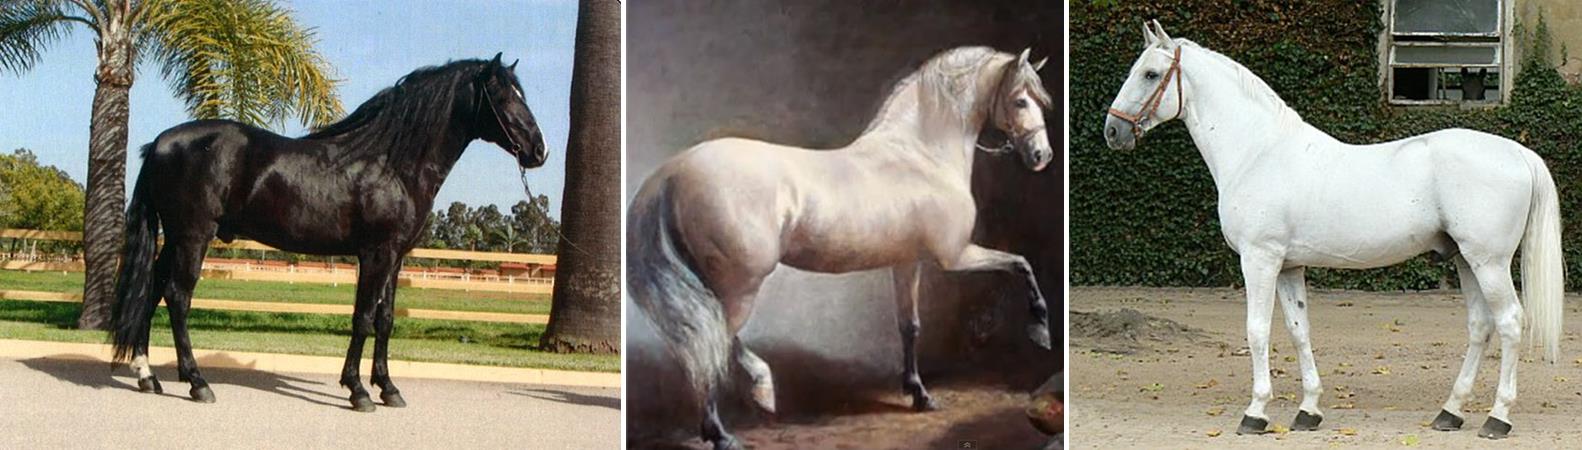 Obr. 4. Vlevo: kůň berberský. Uprostřed: kůň andaluský (z linie Cartujano, která je původnímu typu nejbližší). Vpravo: kůň starokladrubský.